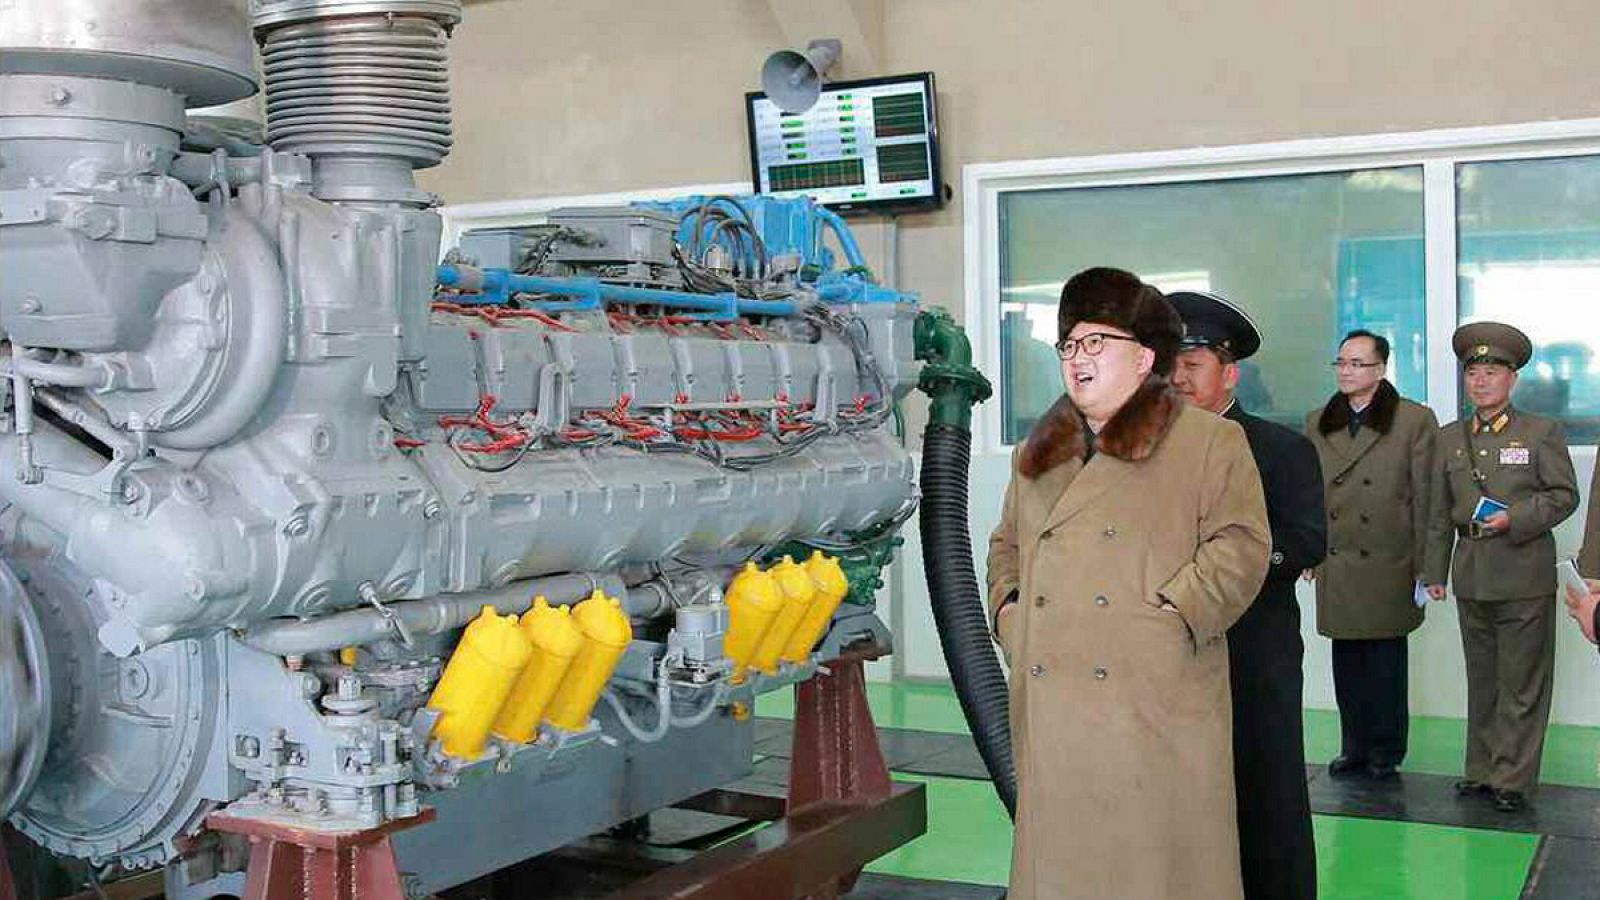 El líder norcoreano Kim Jong-un visitando una fábrica de reparación de la Marina en un locación sin identificar en Corea del Norte.